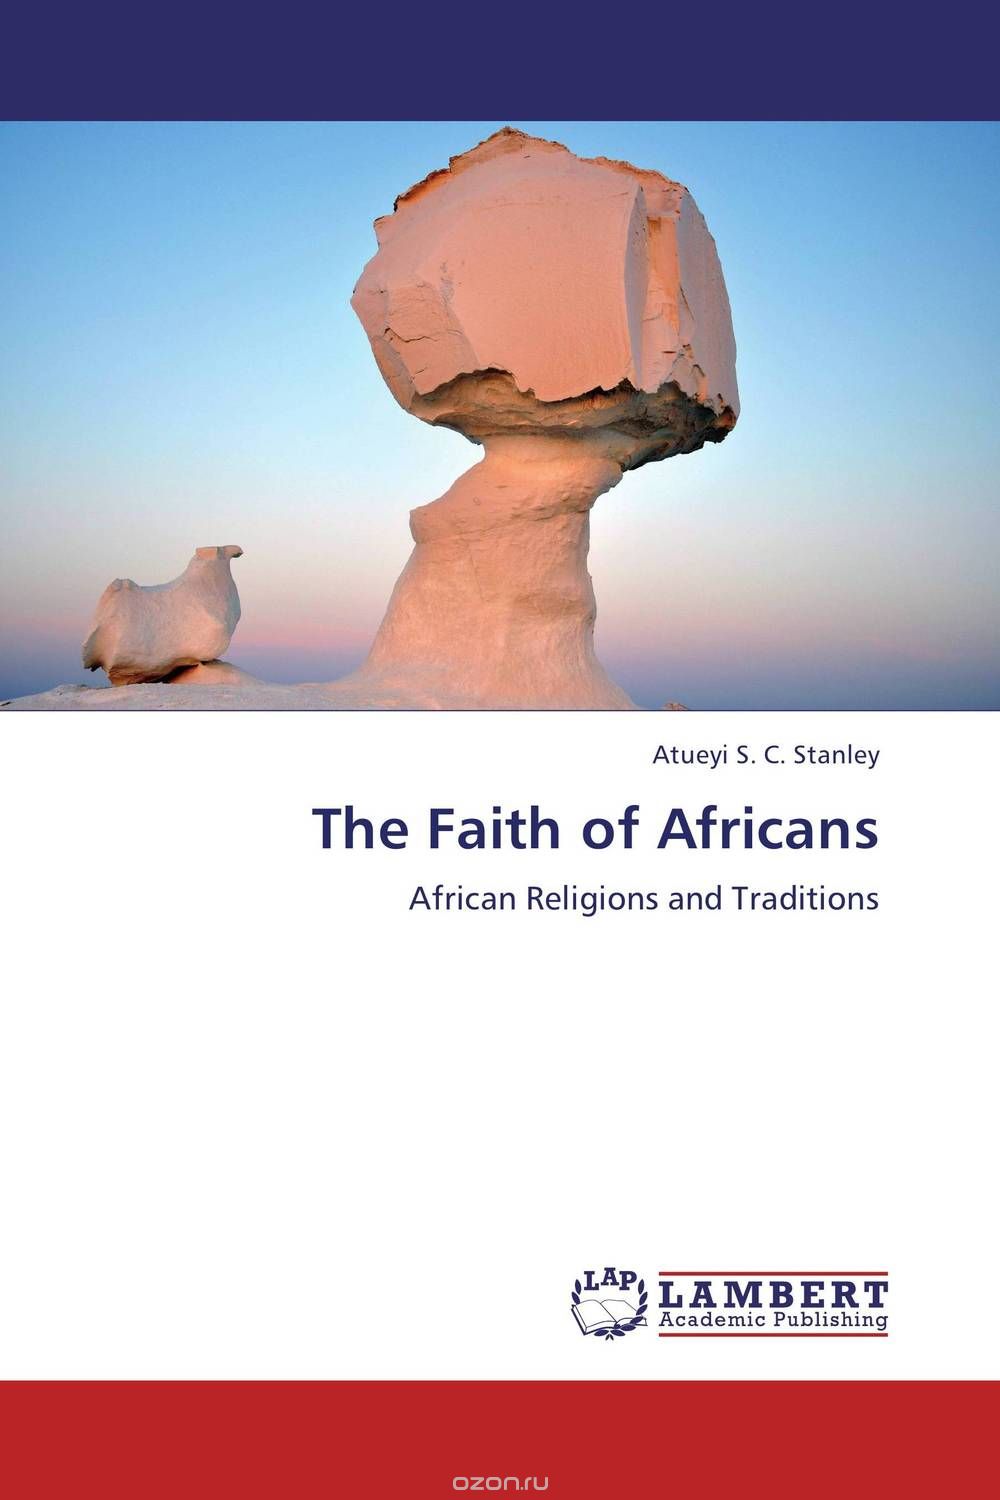 Скачать книгу "The Faith of Africans"